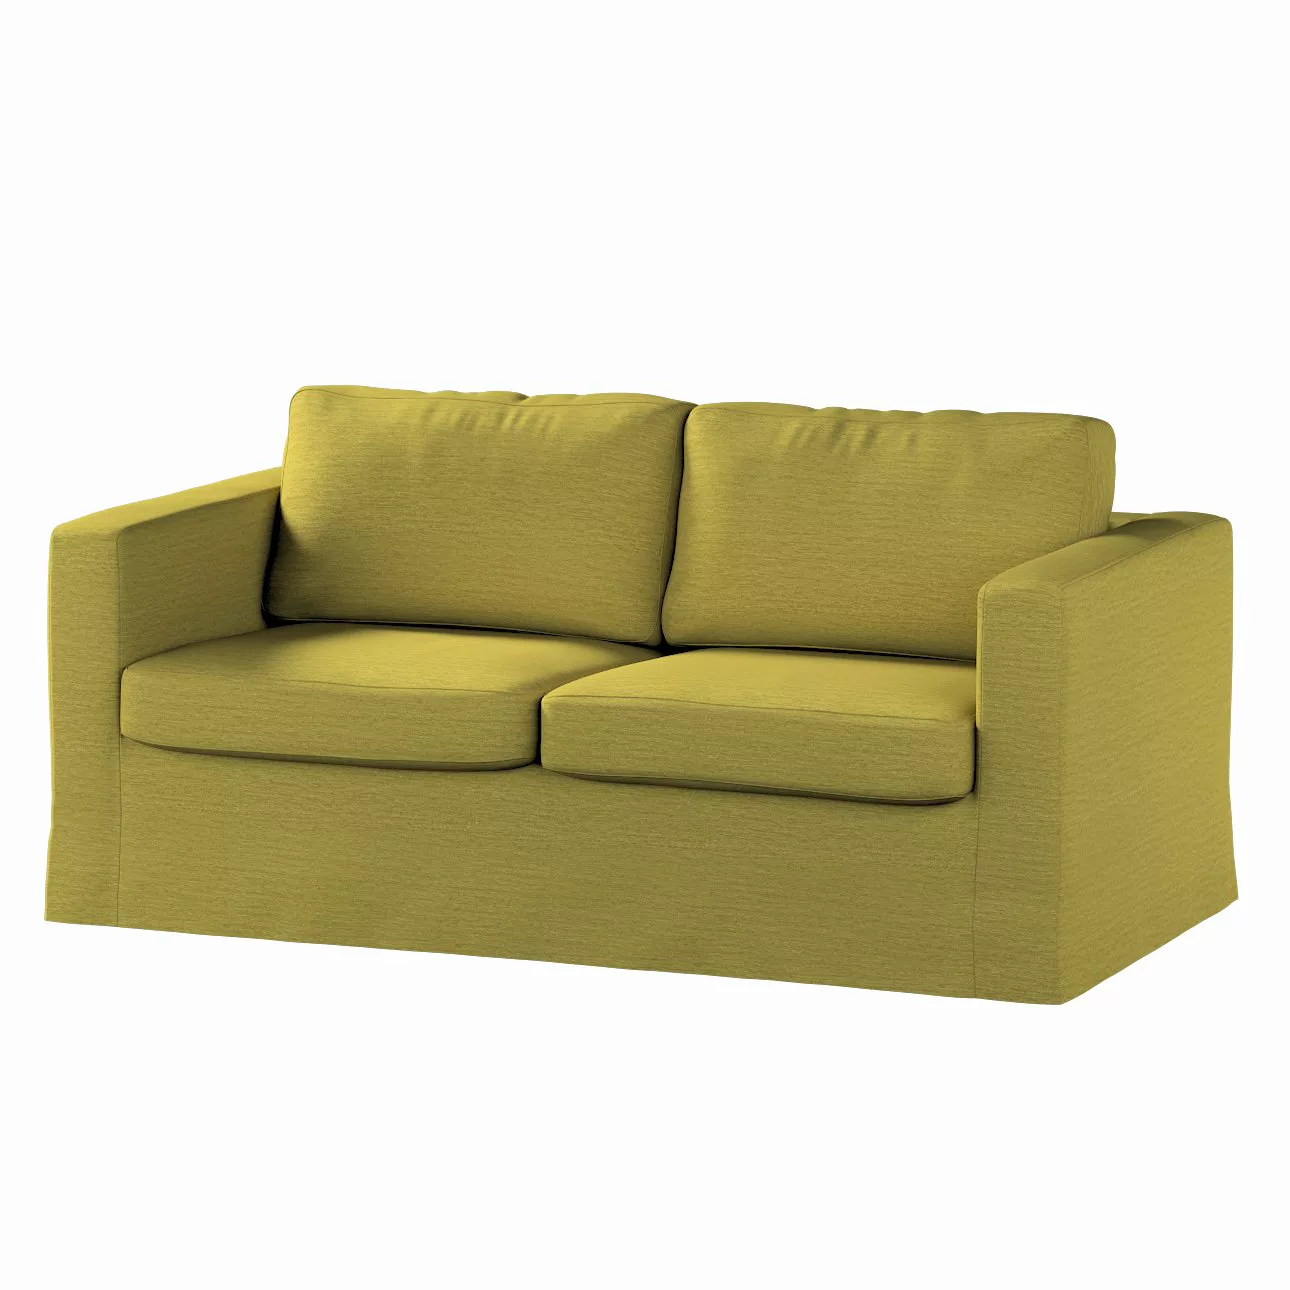 Bezug für Karlstad 2-Sitzer Sofa nicht ausklappbar, lang, grün, Sofahusse, günstig online kaufen